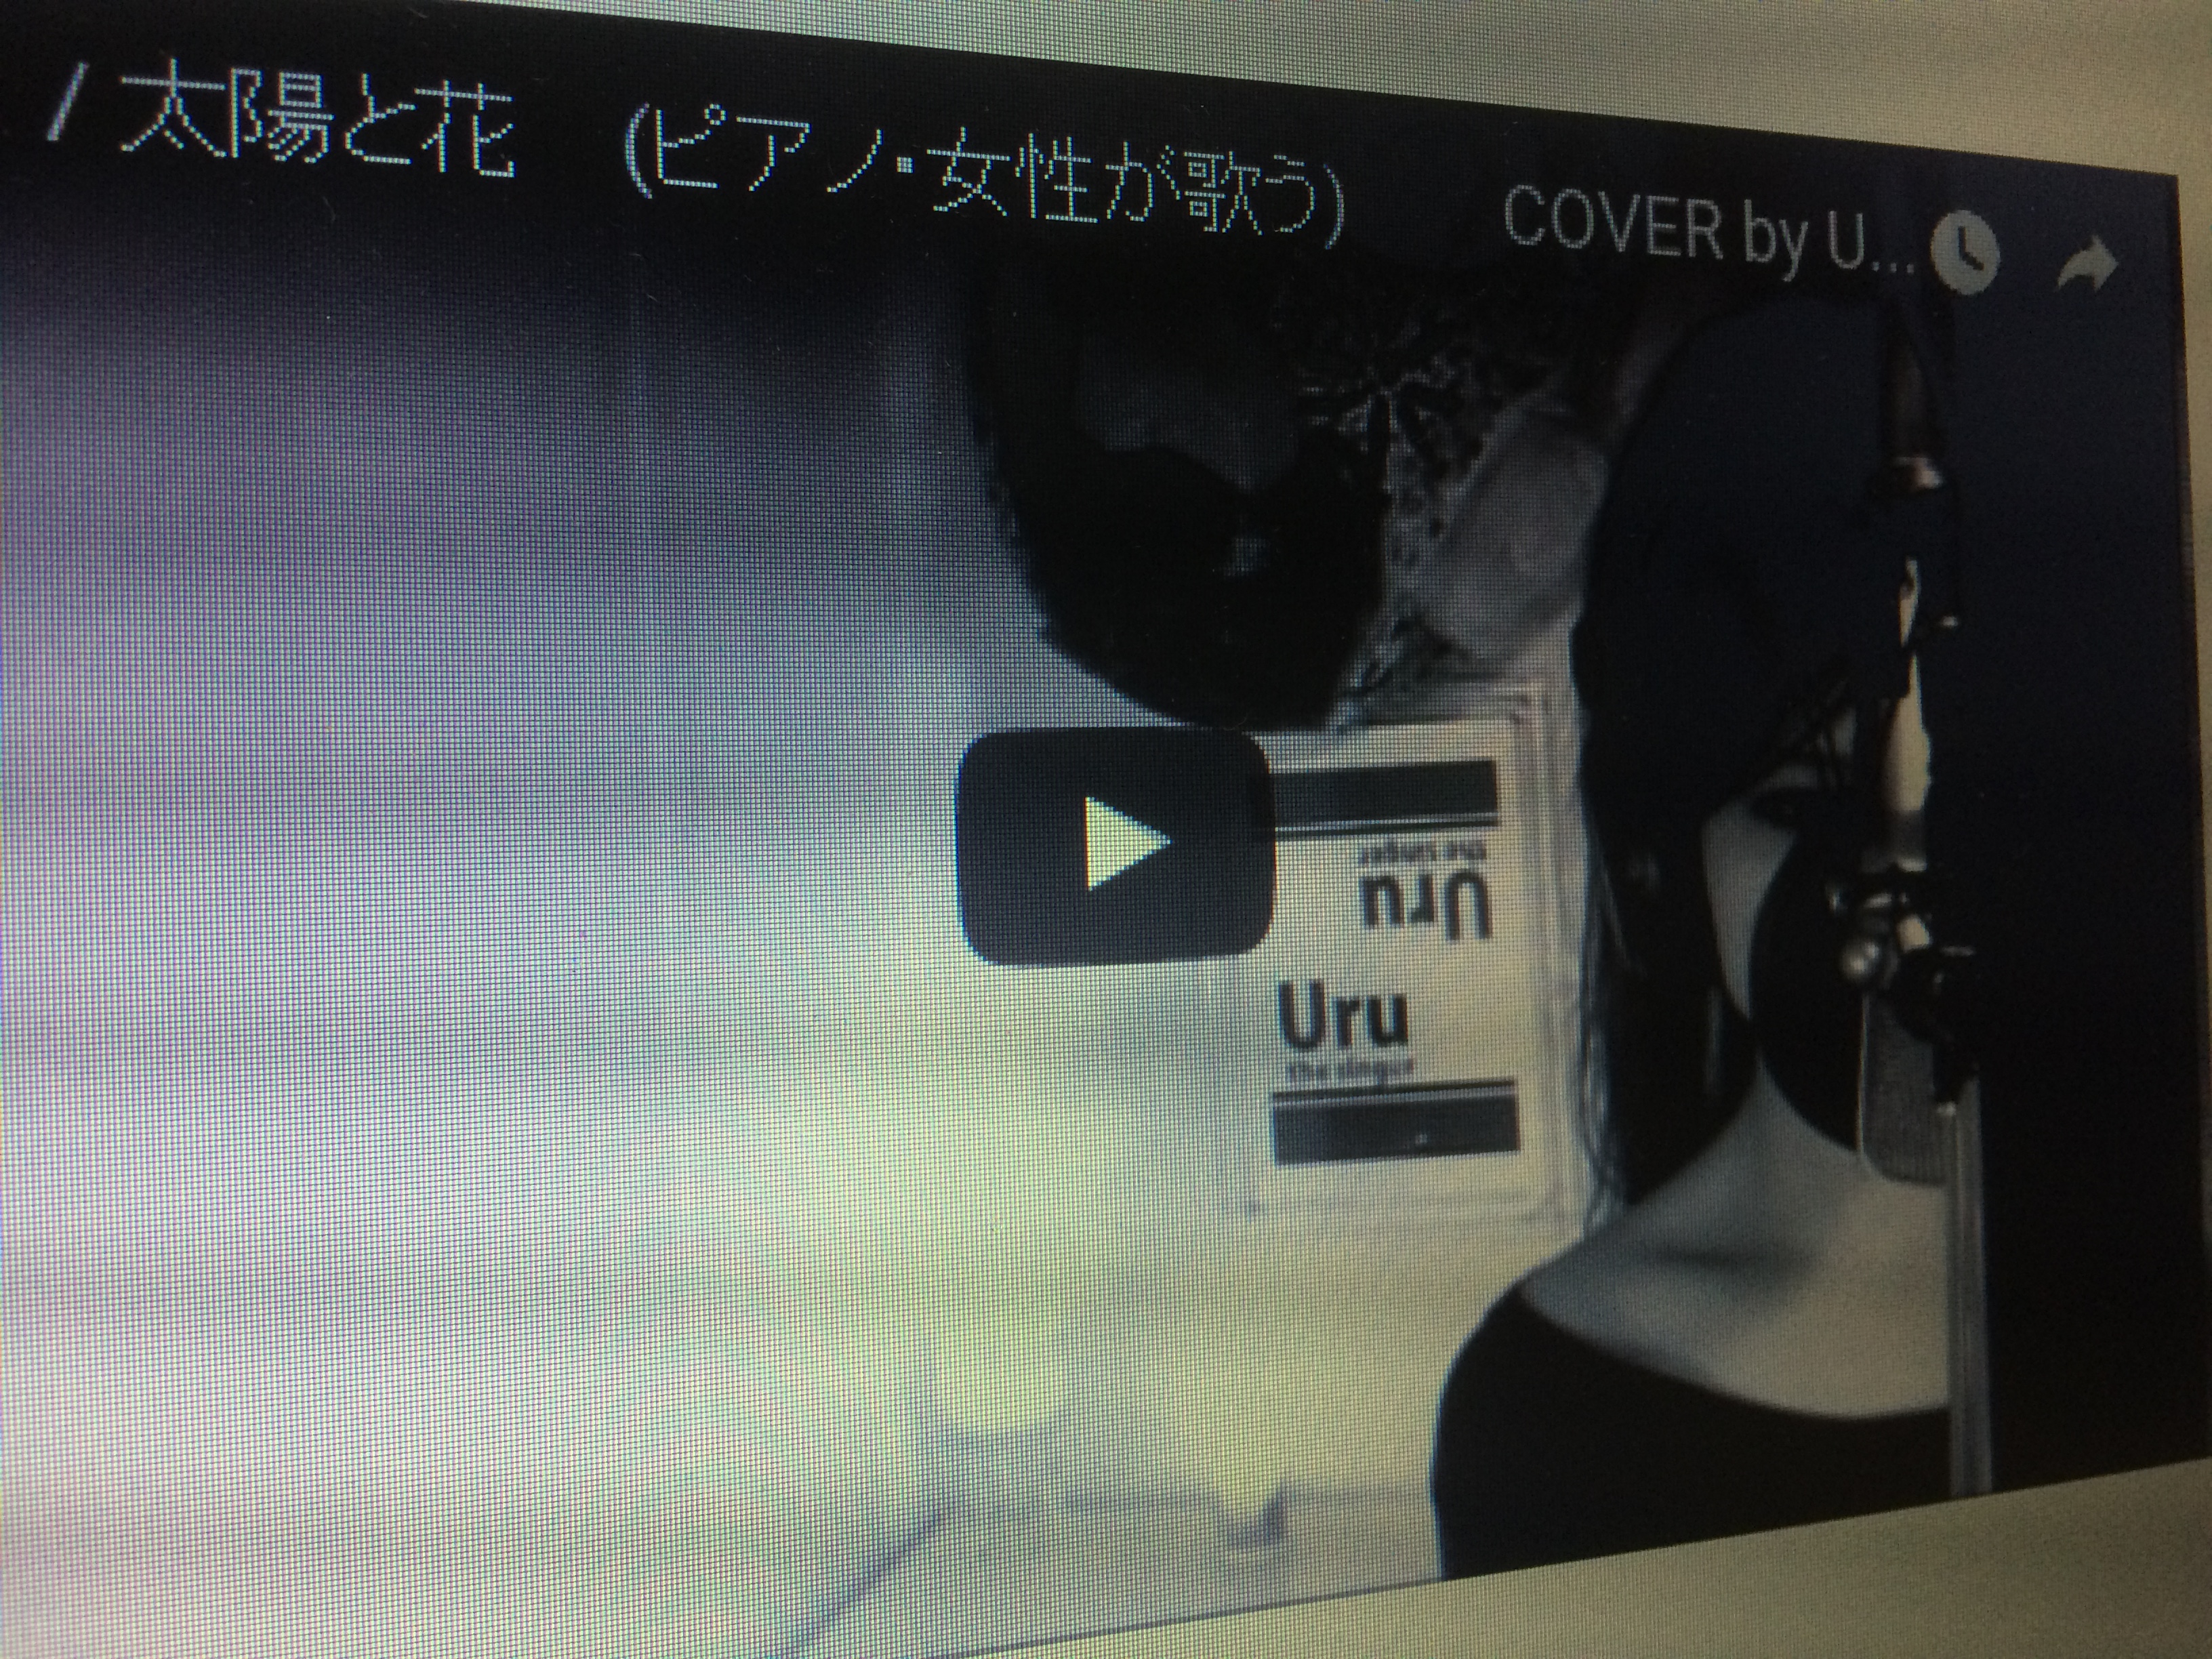 「Uru」メジャーデビュー。youtubeで有名になったシンガーに注目だ！